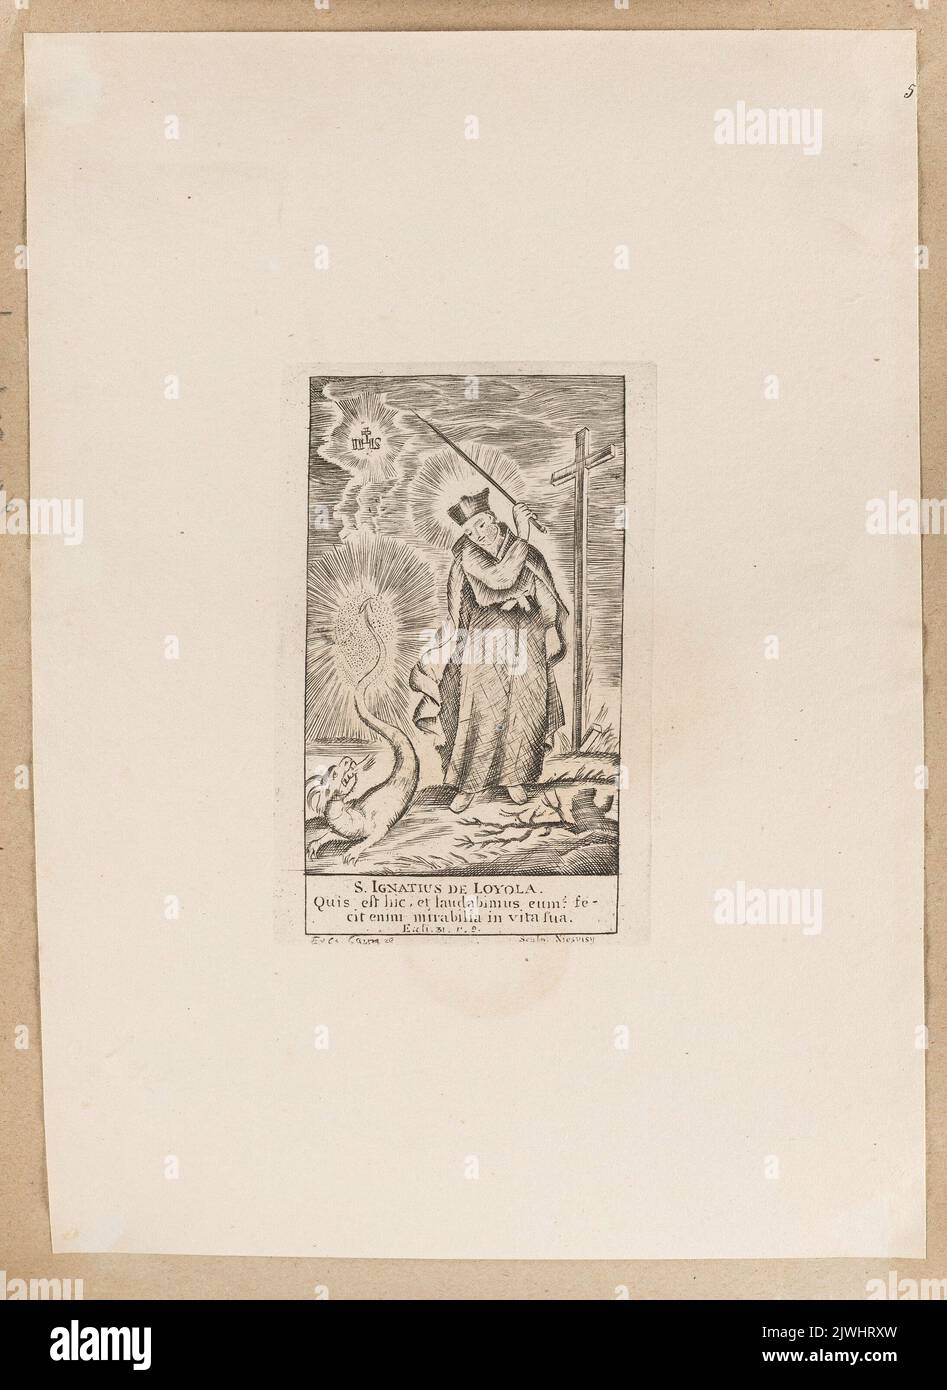 Saint Ignatius of Loyola. Tyszkiewicz, Konstanty (1806-1868), merchant employer, Marcinowski, Antoni (Wilno ; drukarnia ; 1817-1862), printing house, unknown, graphic artist, Caim (fl. ca 1740-1780), publisher Stock Photo